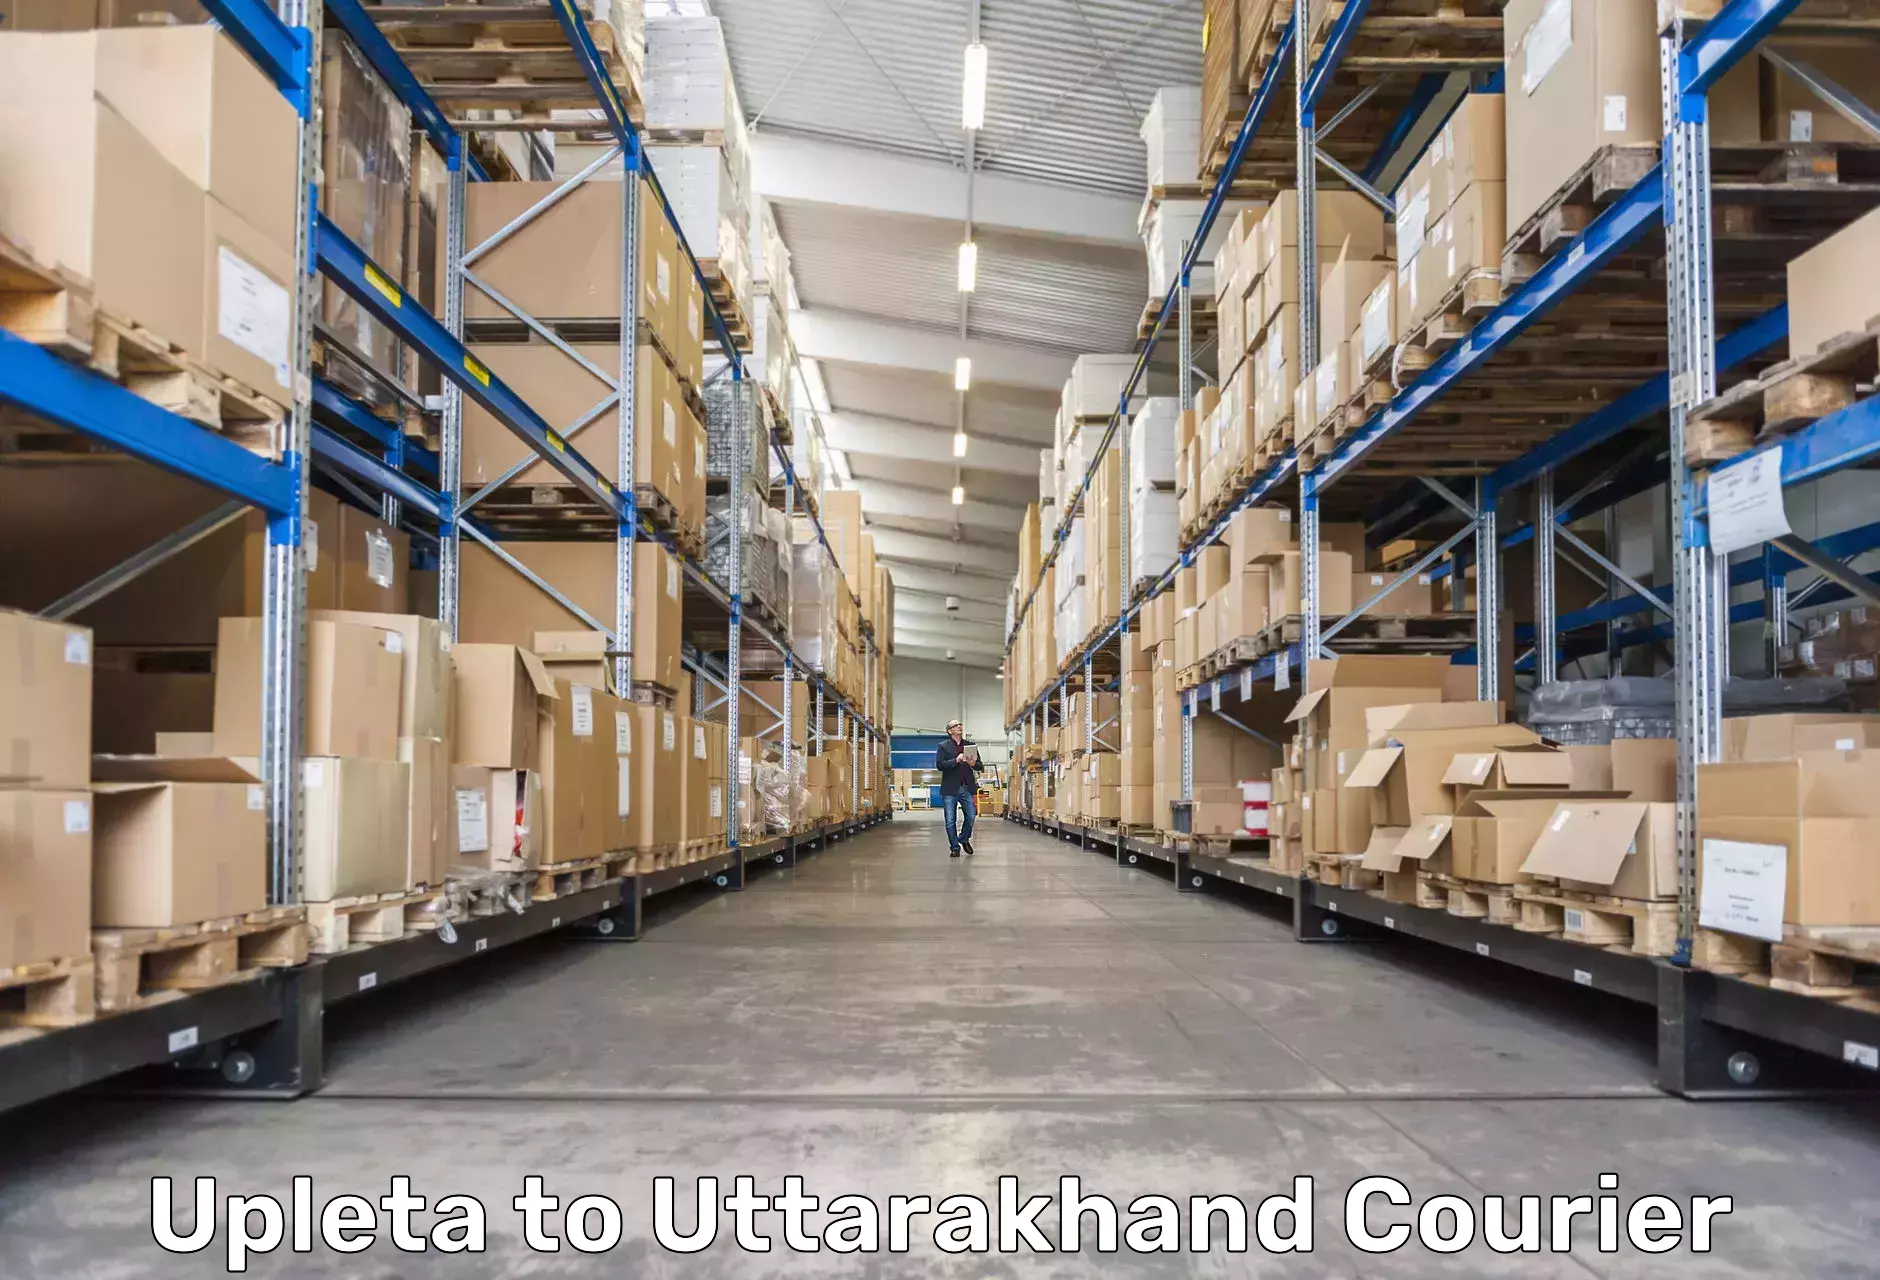 Pharmaceutical courier Upleta to Uttarakhand